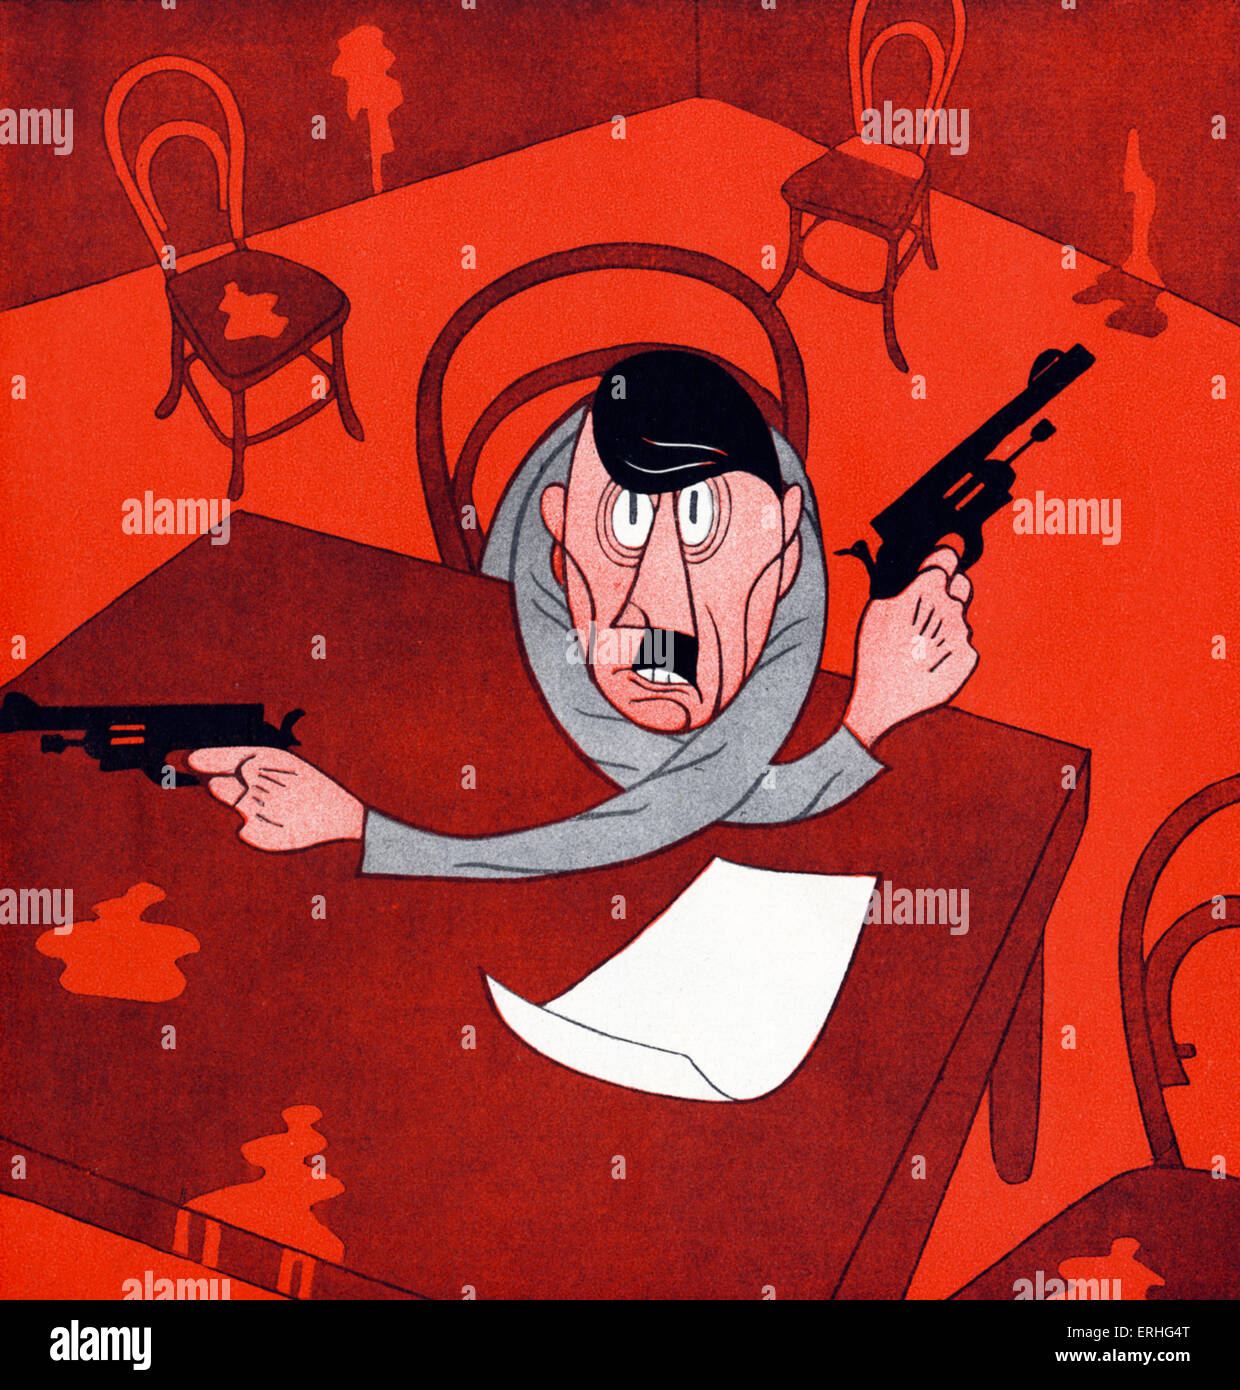 Adolf Hitler-Karikatur mit Revolver von 1934. Bildunterschrift lautet "The Führer Motto. Bereit sein ist alles! "aus Stockfoto